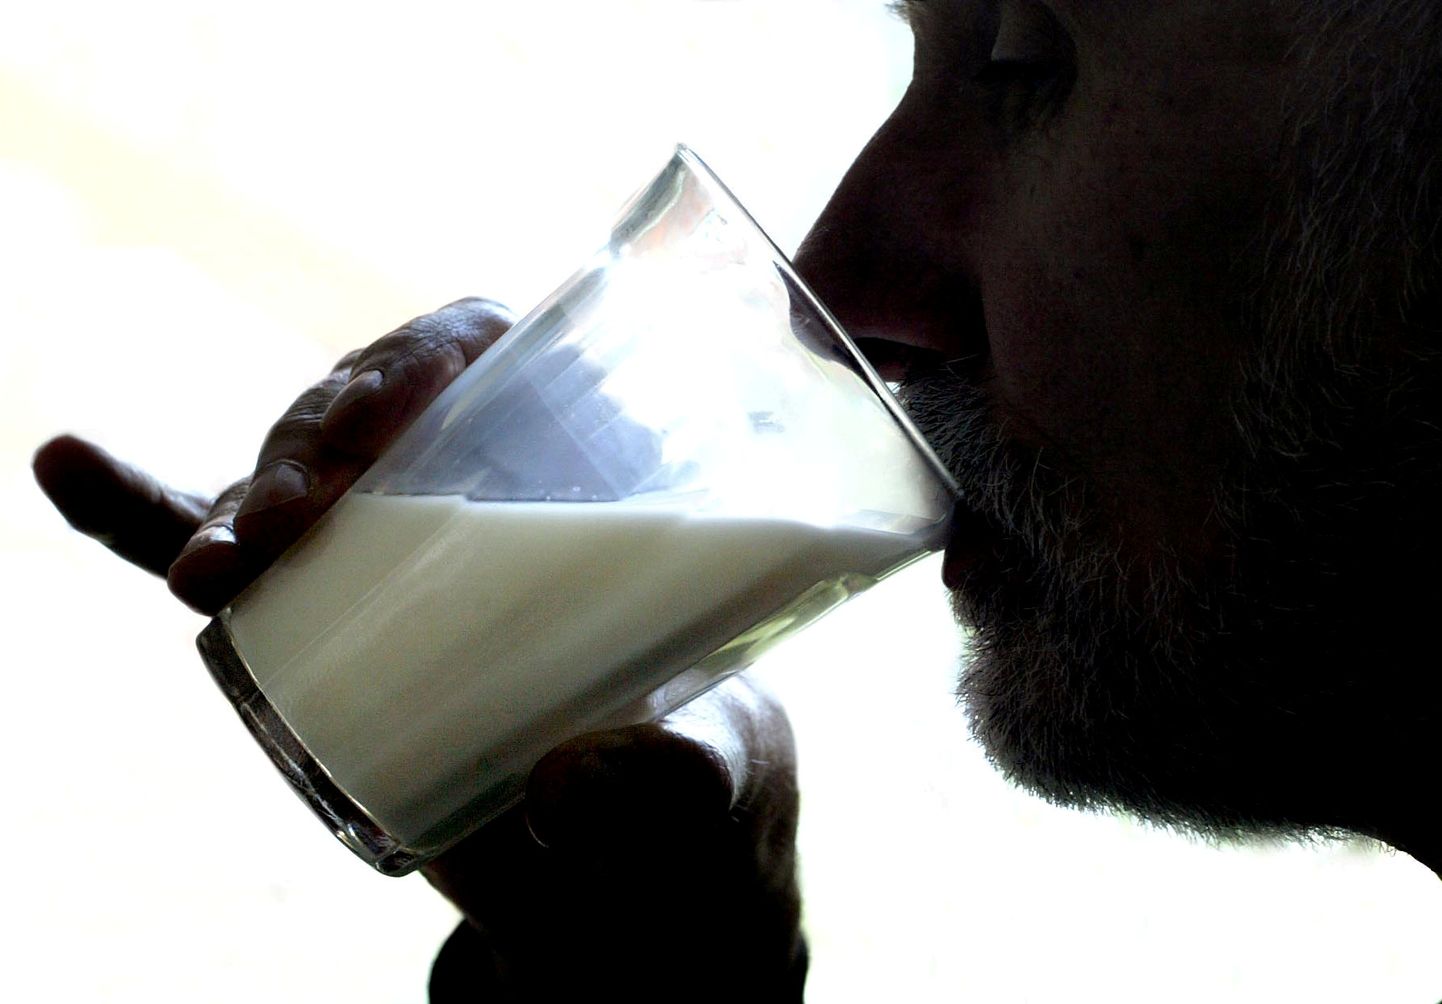 Mees piima joomas. Kahjuks ei joonud artikli peategelane piima küll tassist vaid otse pakendist.